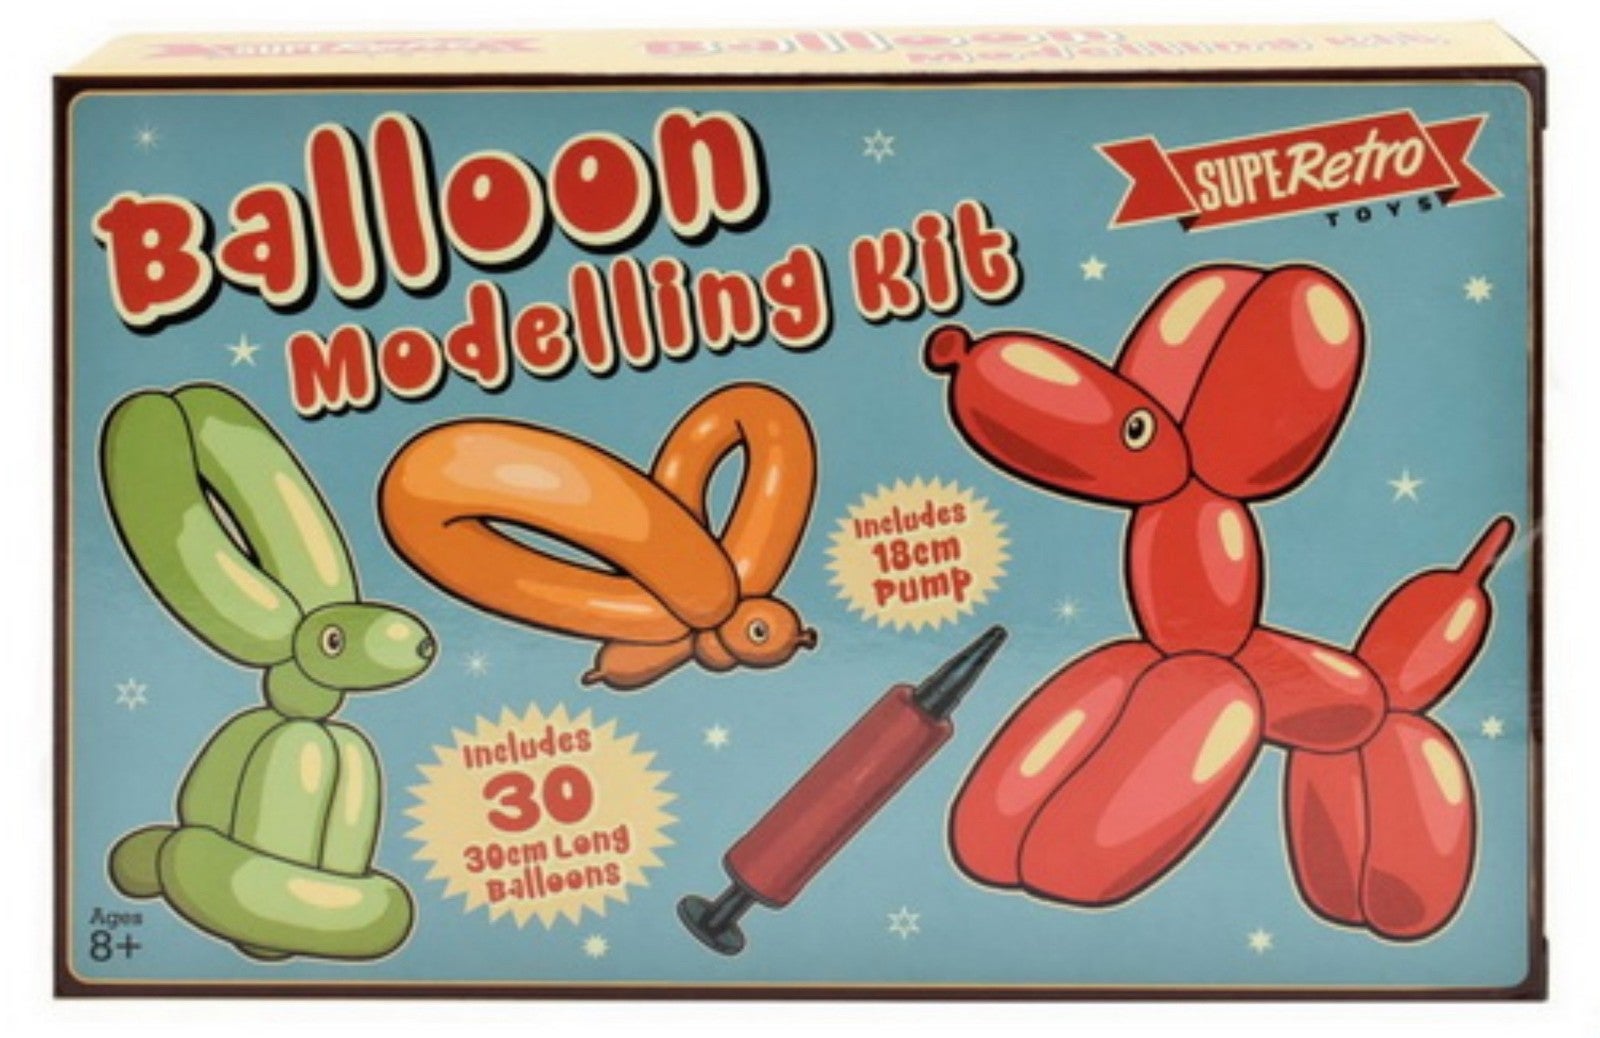 Retro Balloon Modelling Kit